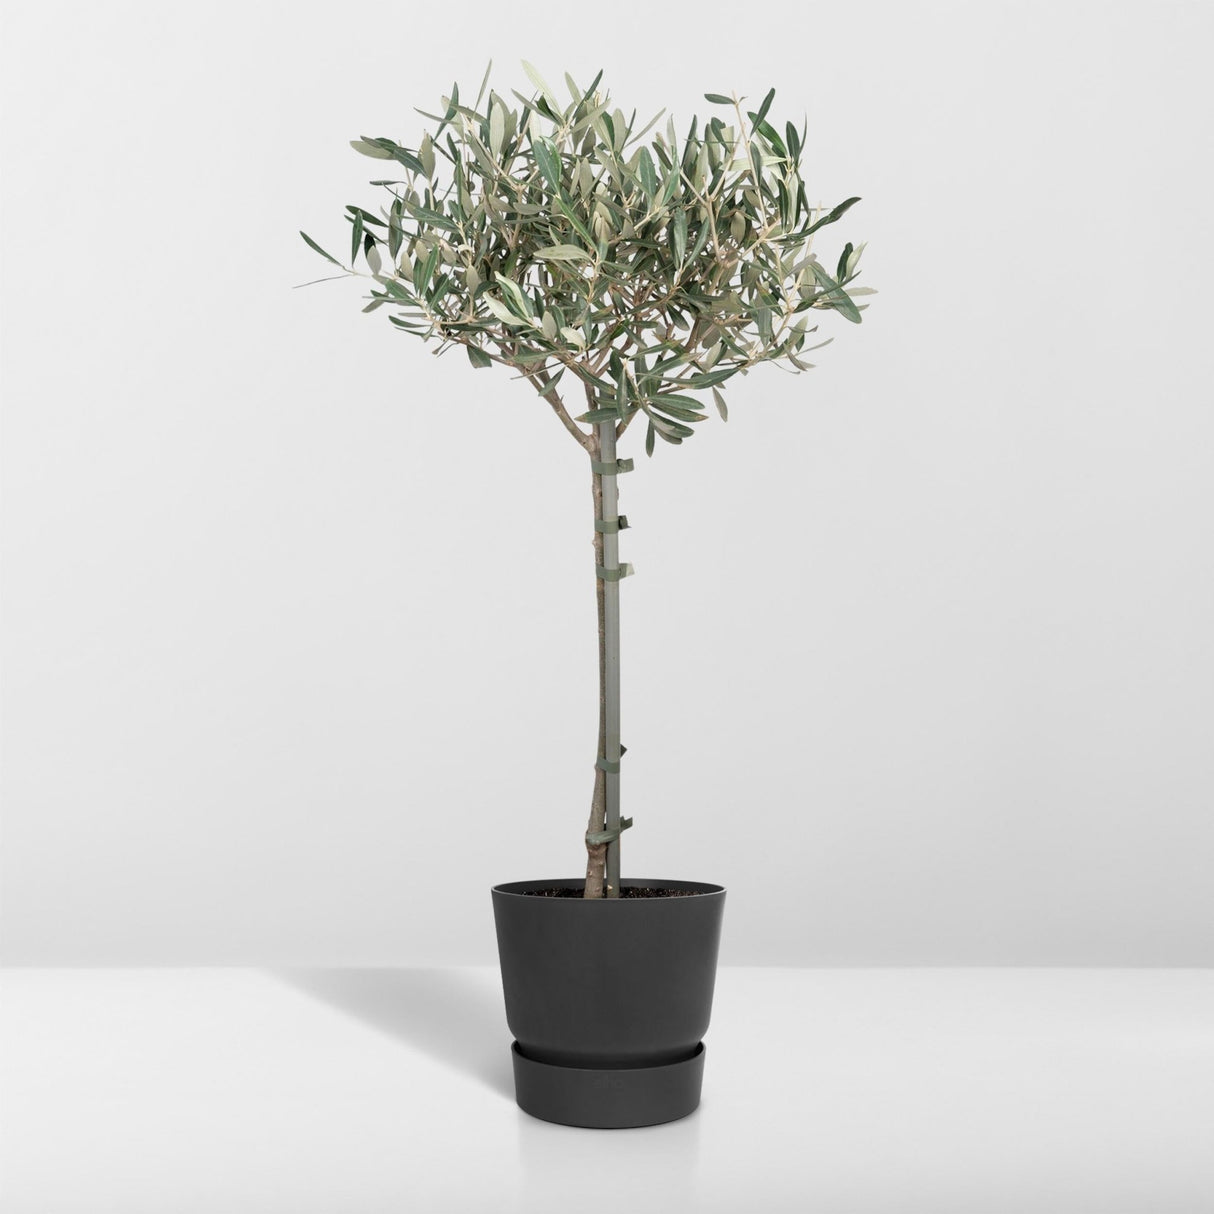 Livraison plante - Olivier olea - 90cm - Ø19 - arbuste fruitier - Plante extérieur